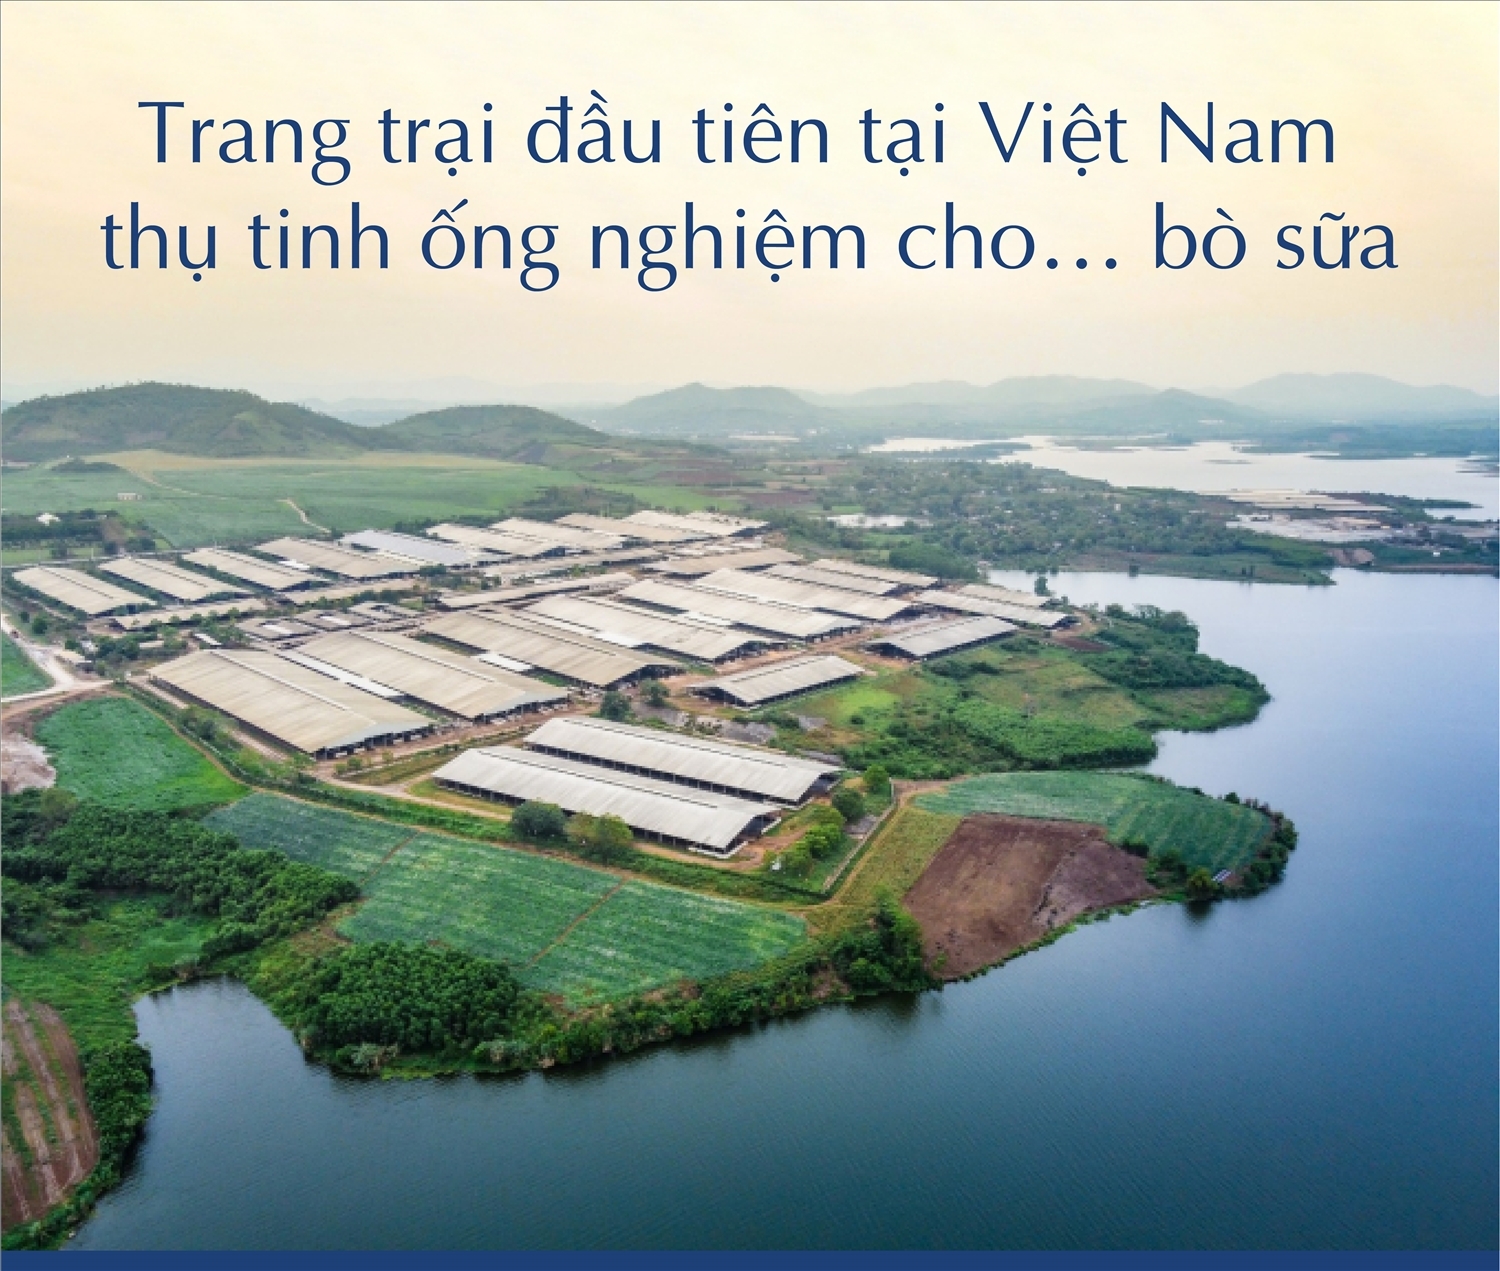 Trang trại đầu tiên tại Việt Nam thụ tinh ống nghiệm cho… bò sữa